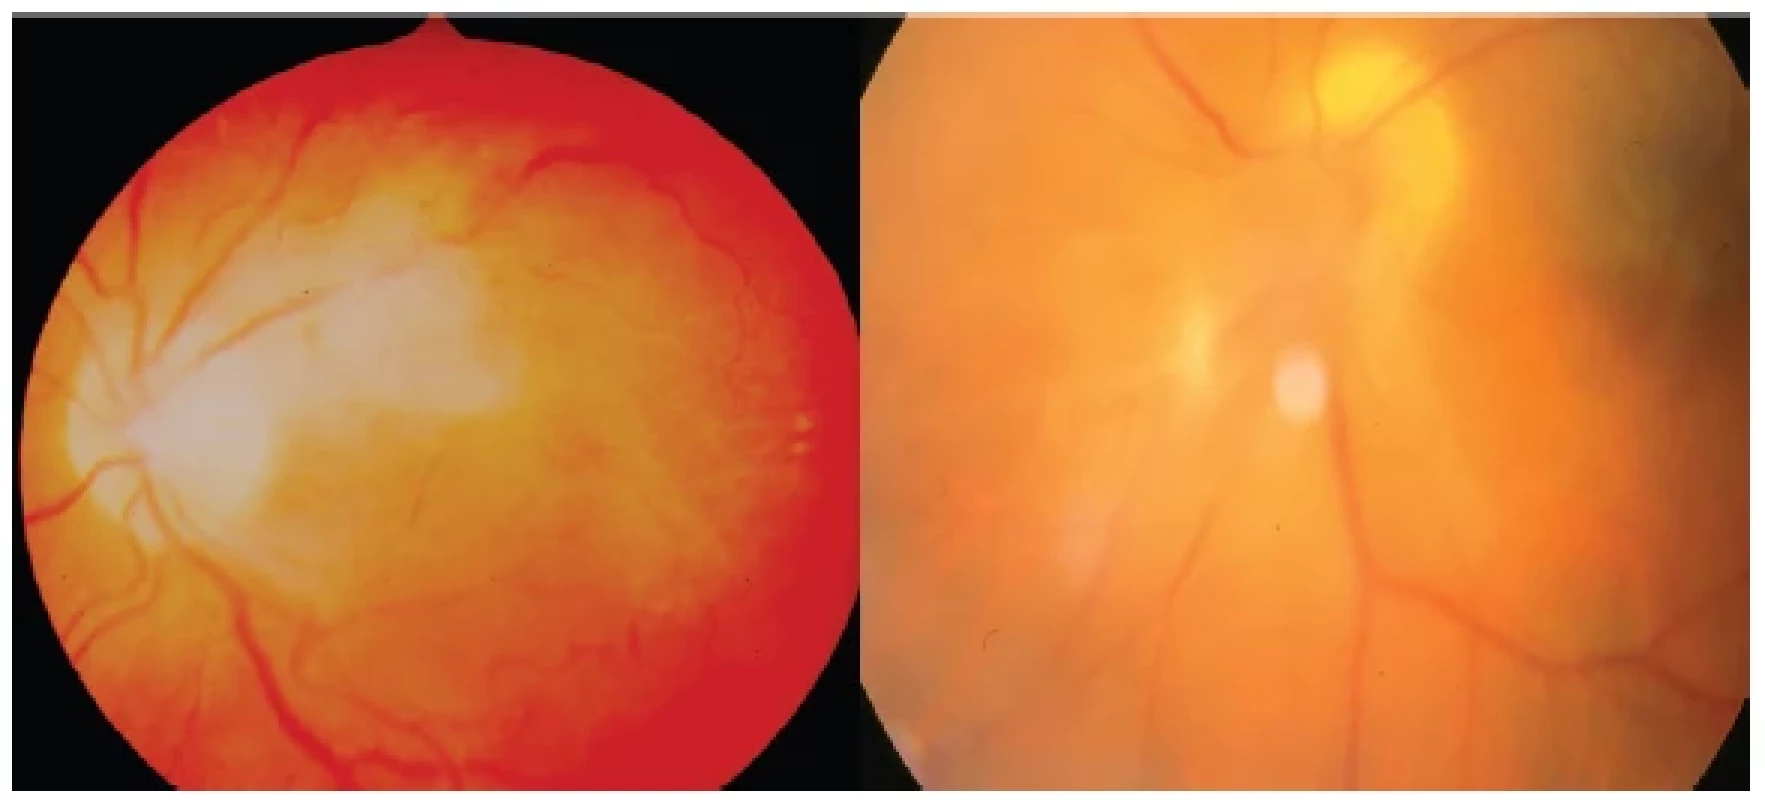 Left: Toxocara granuloma with subfoveolar location inducing CME
Right: Toxocara granuloma with juxtapapillary location accompanied by pronounced vitritis
